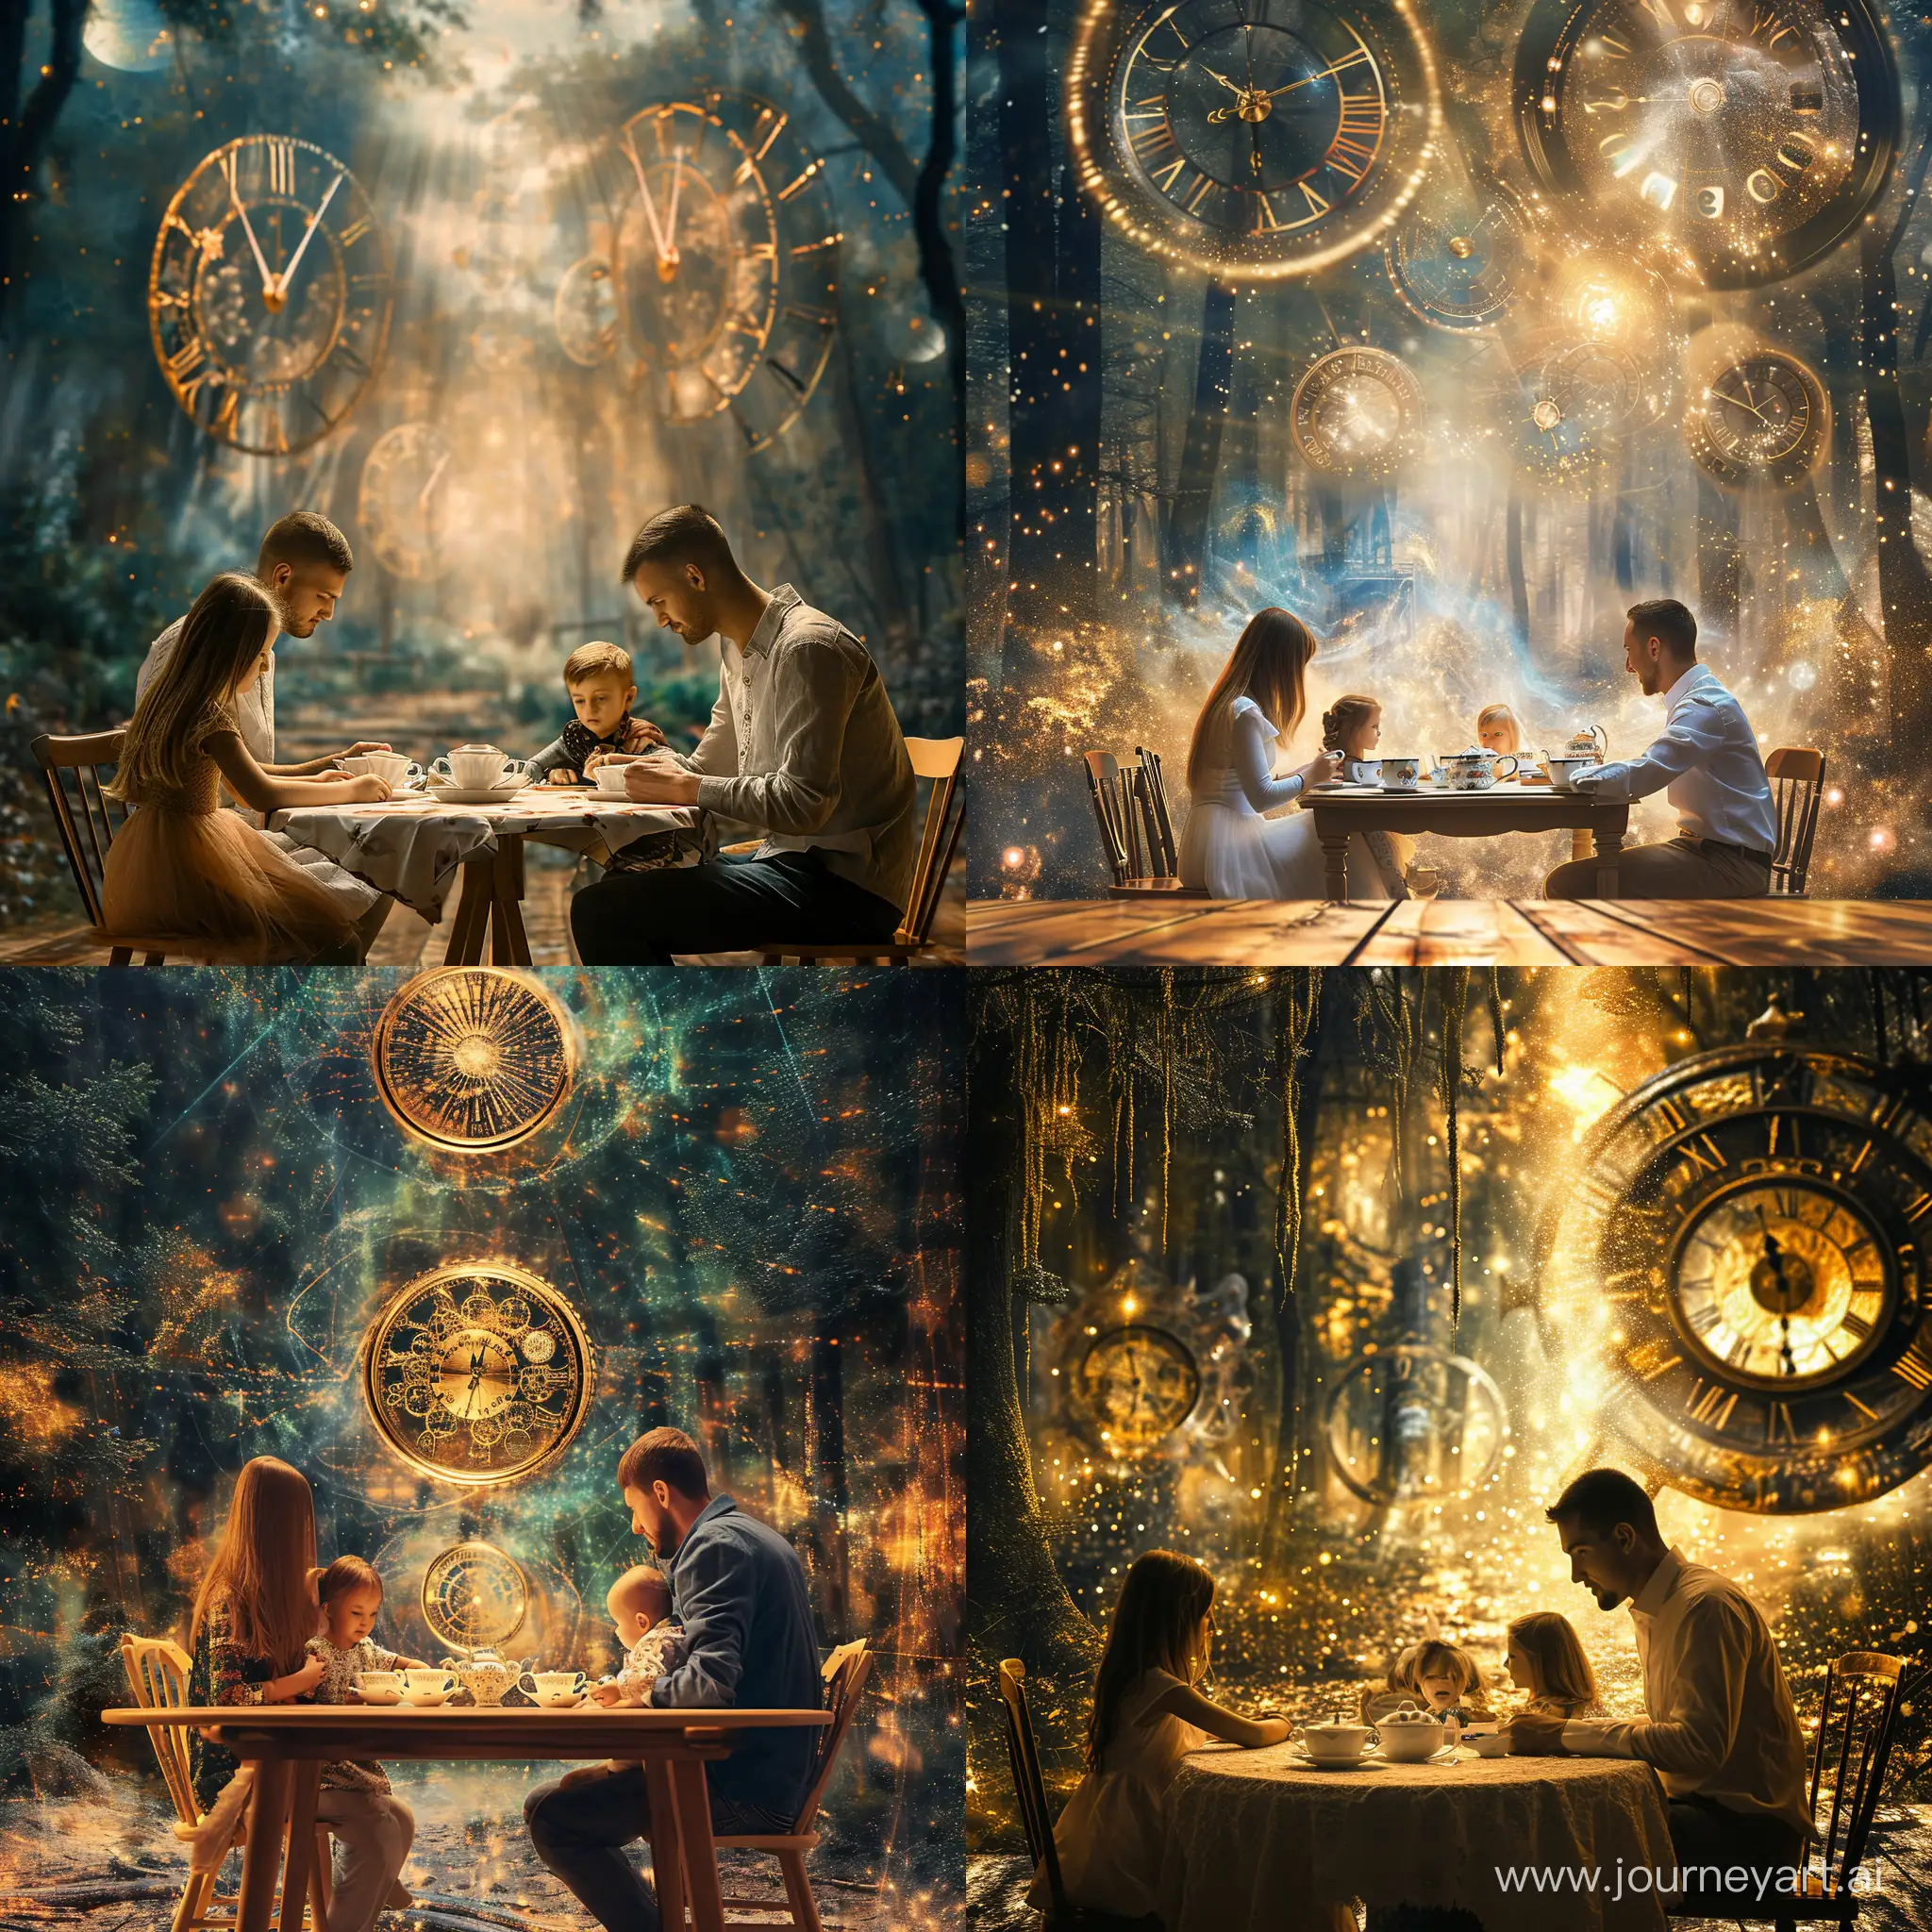 чайпитие, стол, волшебном лес, сидит семья, на заднем плане большие вселенские часы, Энергия, поток, принятие, разрешение, любовь, исцеление, пробуждение, сказочная картина